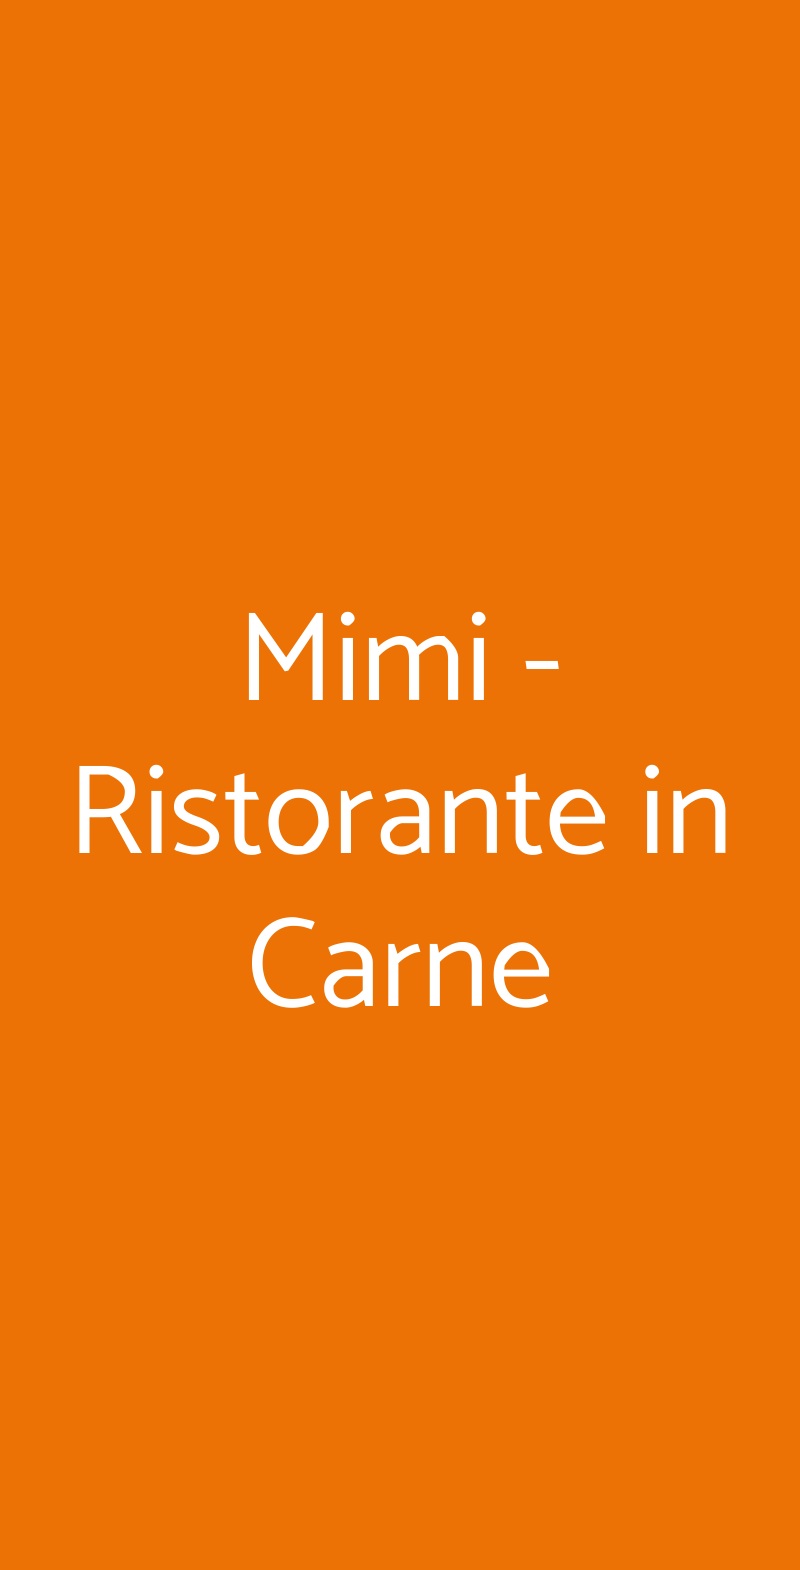 Mimi - Ristorante in Carne Bari menù 1 pagina